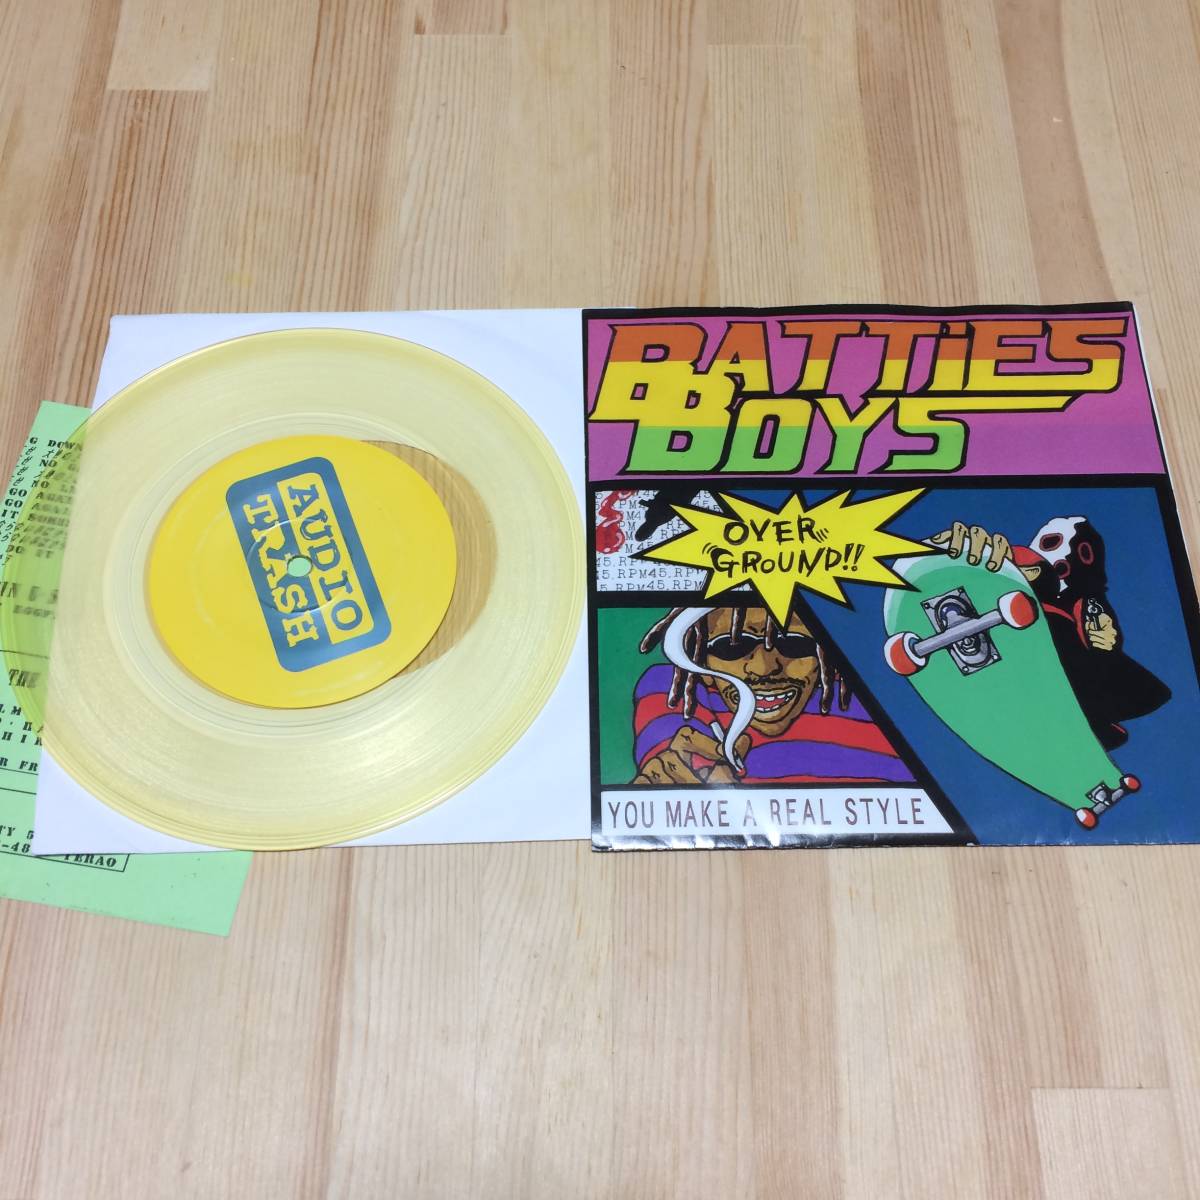 Batties Boys Over Ground!! 1997 Clear Yellow Vinyl カラーレコード アナログ 7インチ シングル レコード ザ・バティーズ・ボーイズの画像1